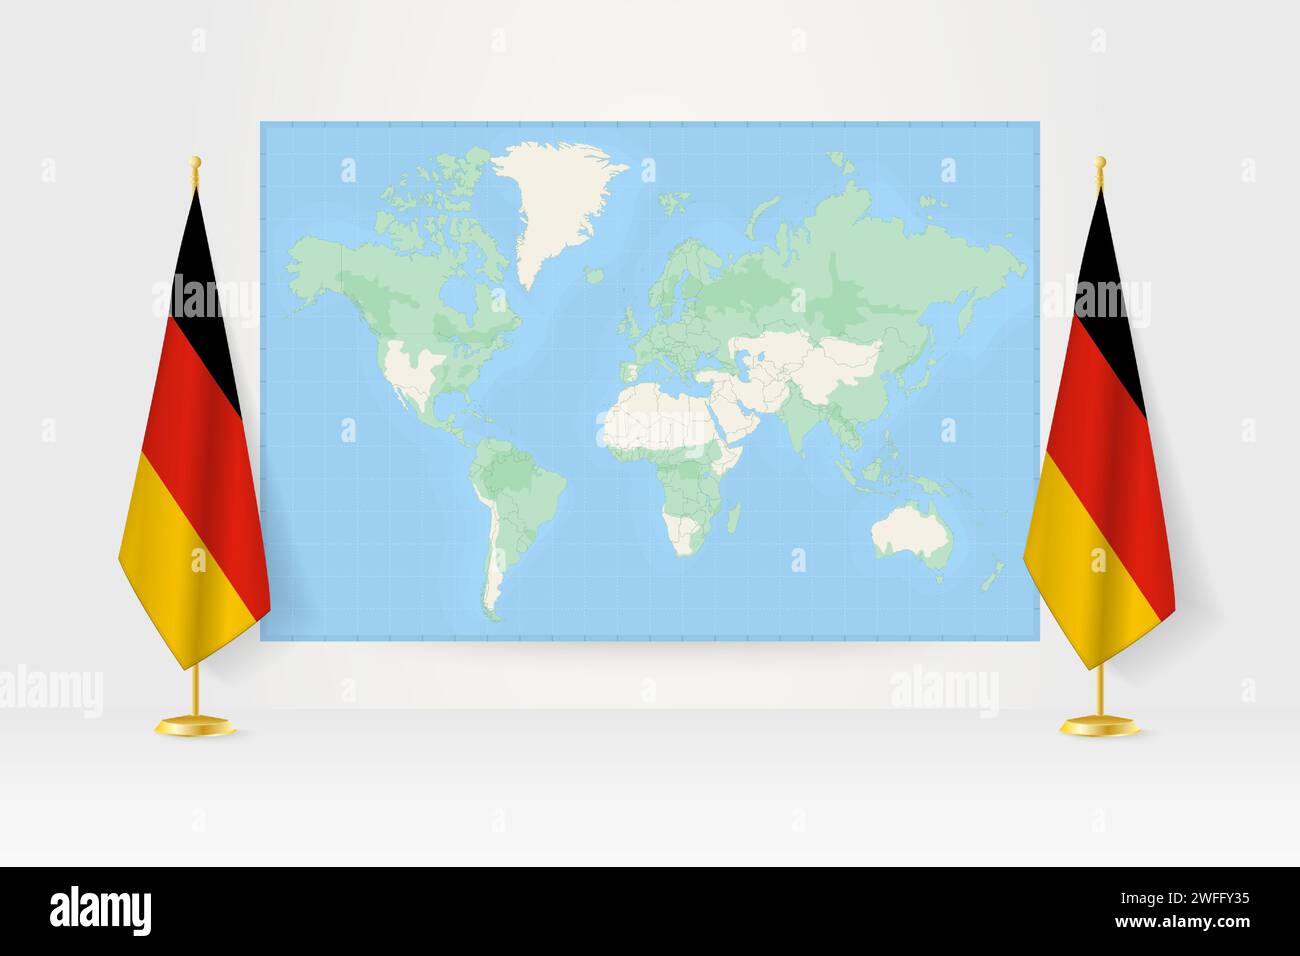 Weltkarte zwischen zwei hängenden Fahnen Deutschlands auf Fahnenstand. Vektor-Illustration für Diplomatie-Treffen, Pressekonferenz und andere. Stock Vektor